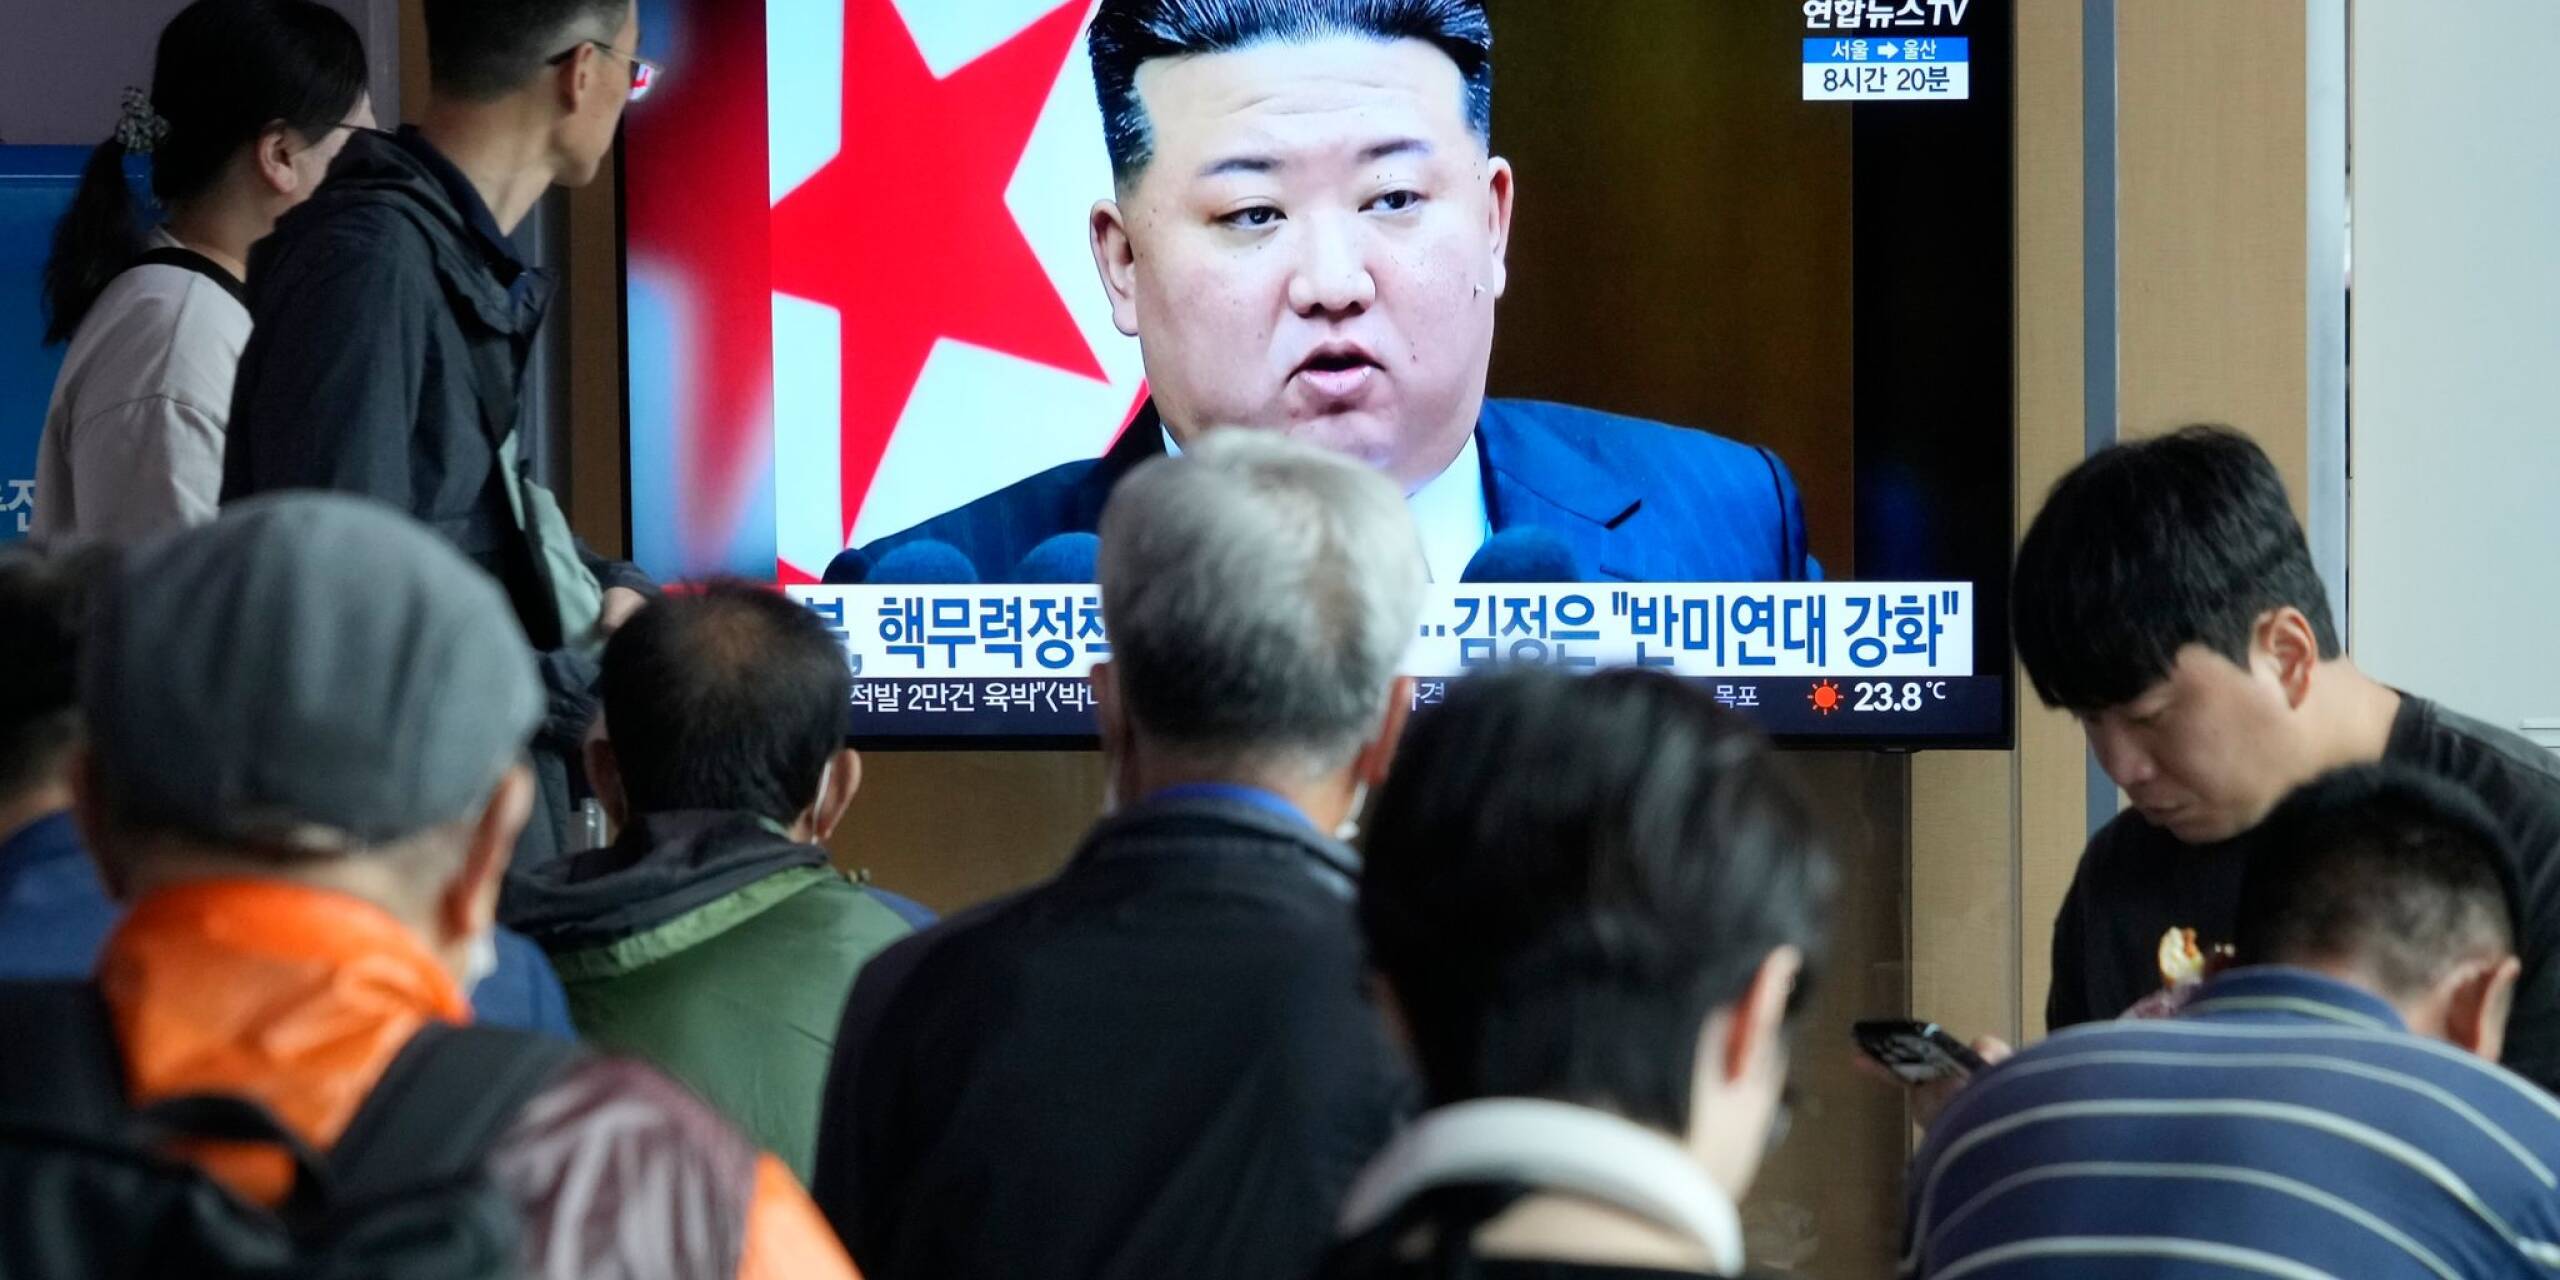 Machthaber Kim Jong Un hat seine Politik zum Ausbau der Atomstreitmacht in der Verfassung Nordkoreas verankern lassen. Dies wurde nun parlamentarisch beschlossen.